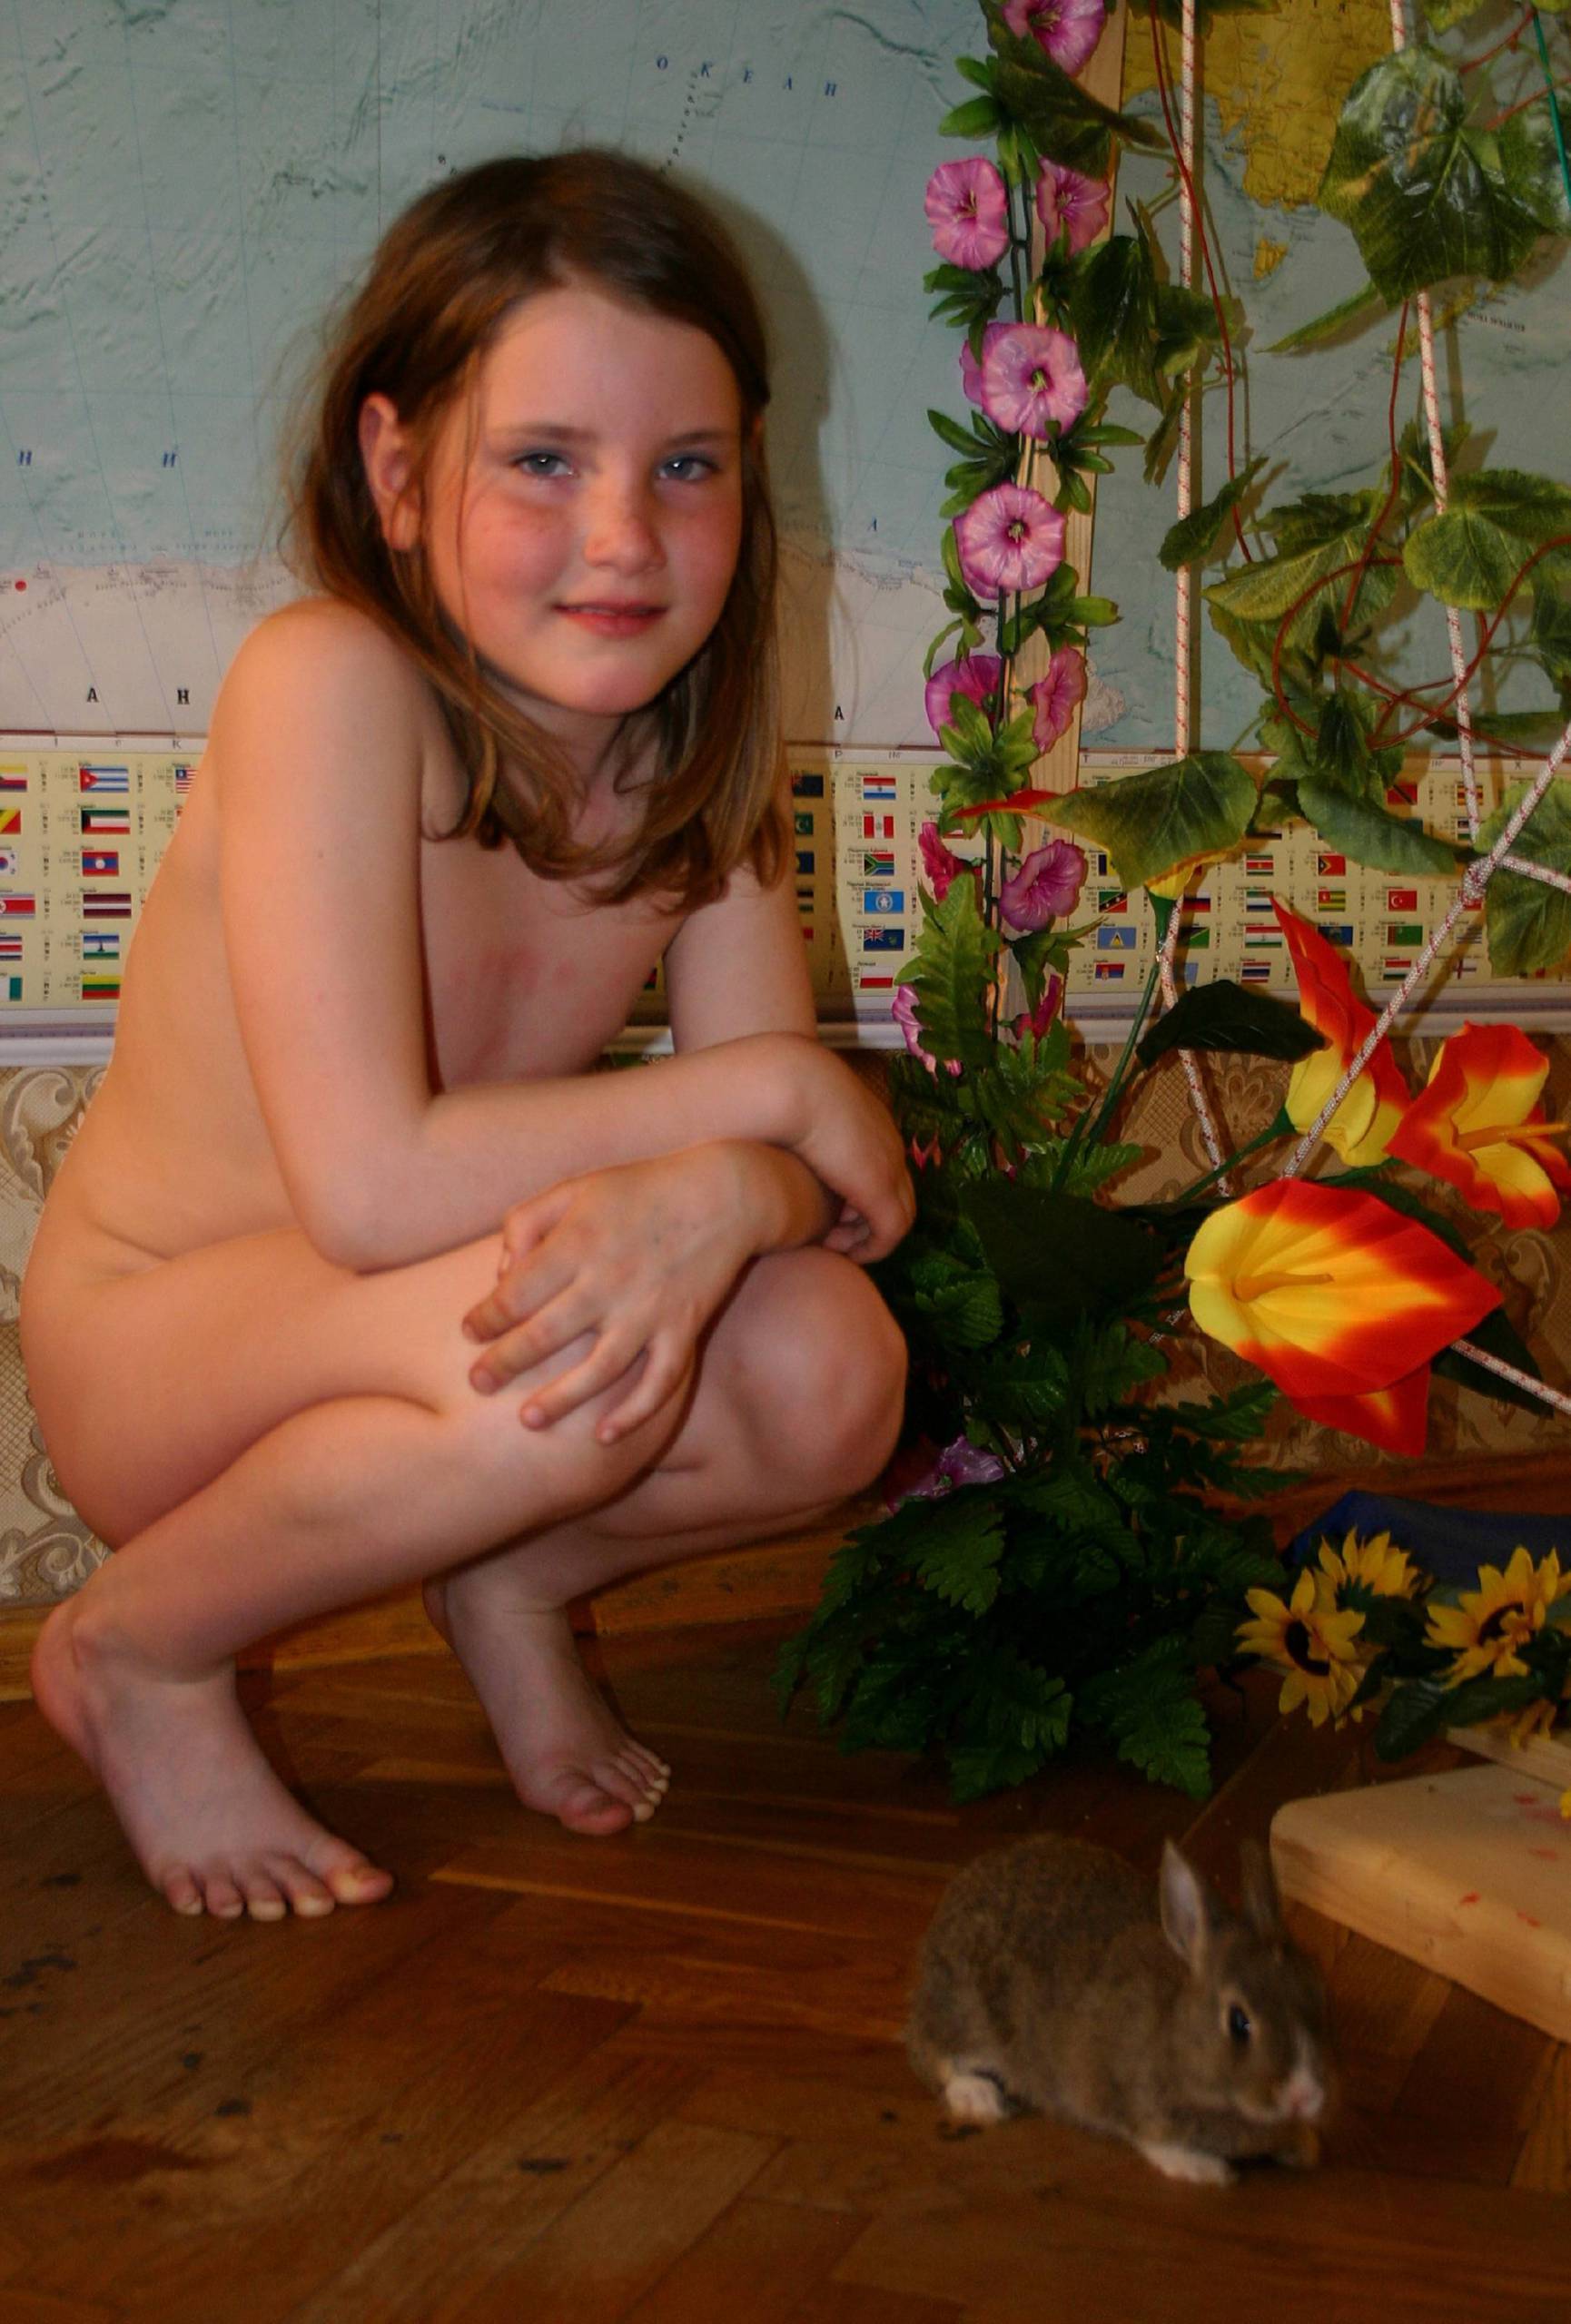 Purenudism Pics Nudist Girl and the Bunny - 1